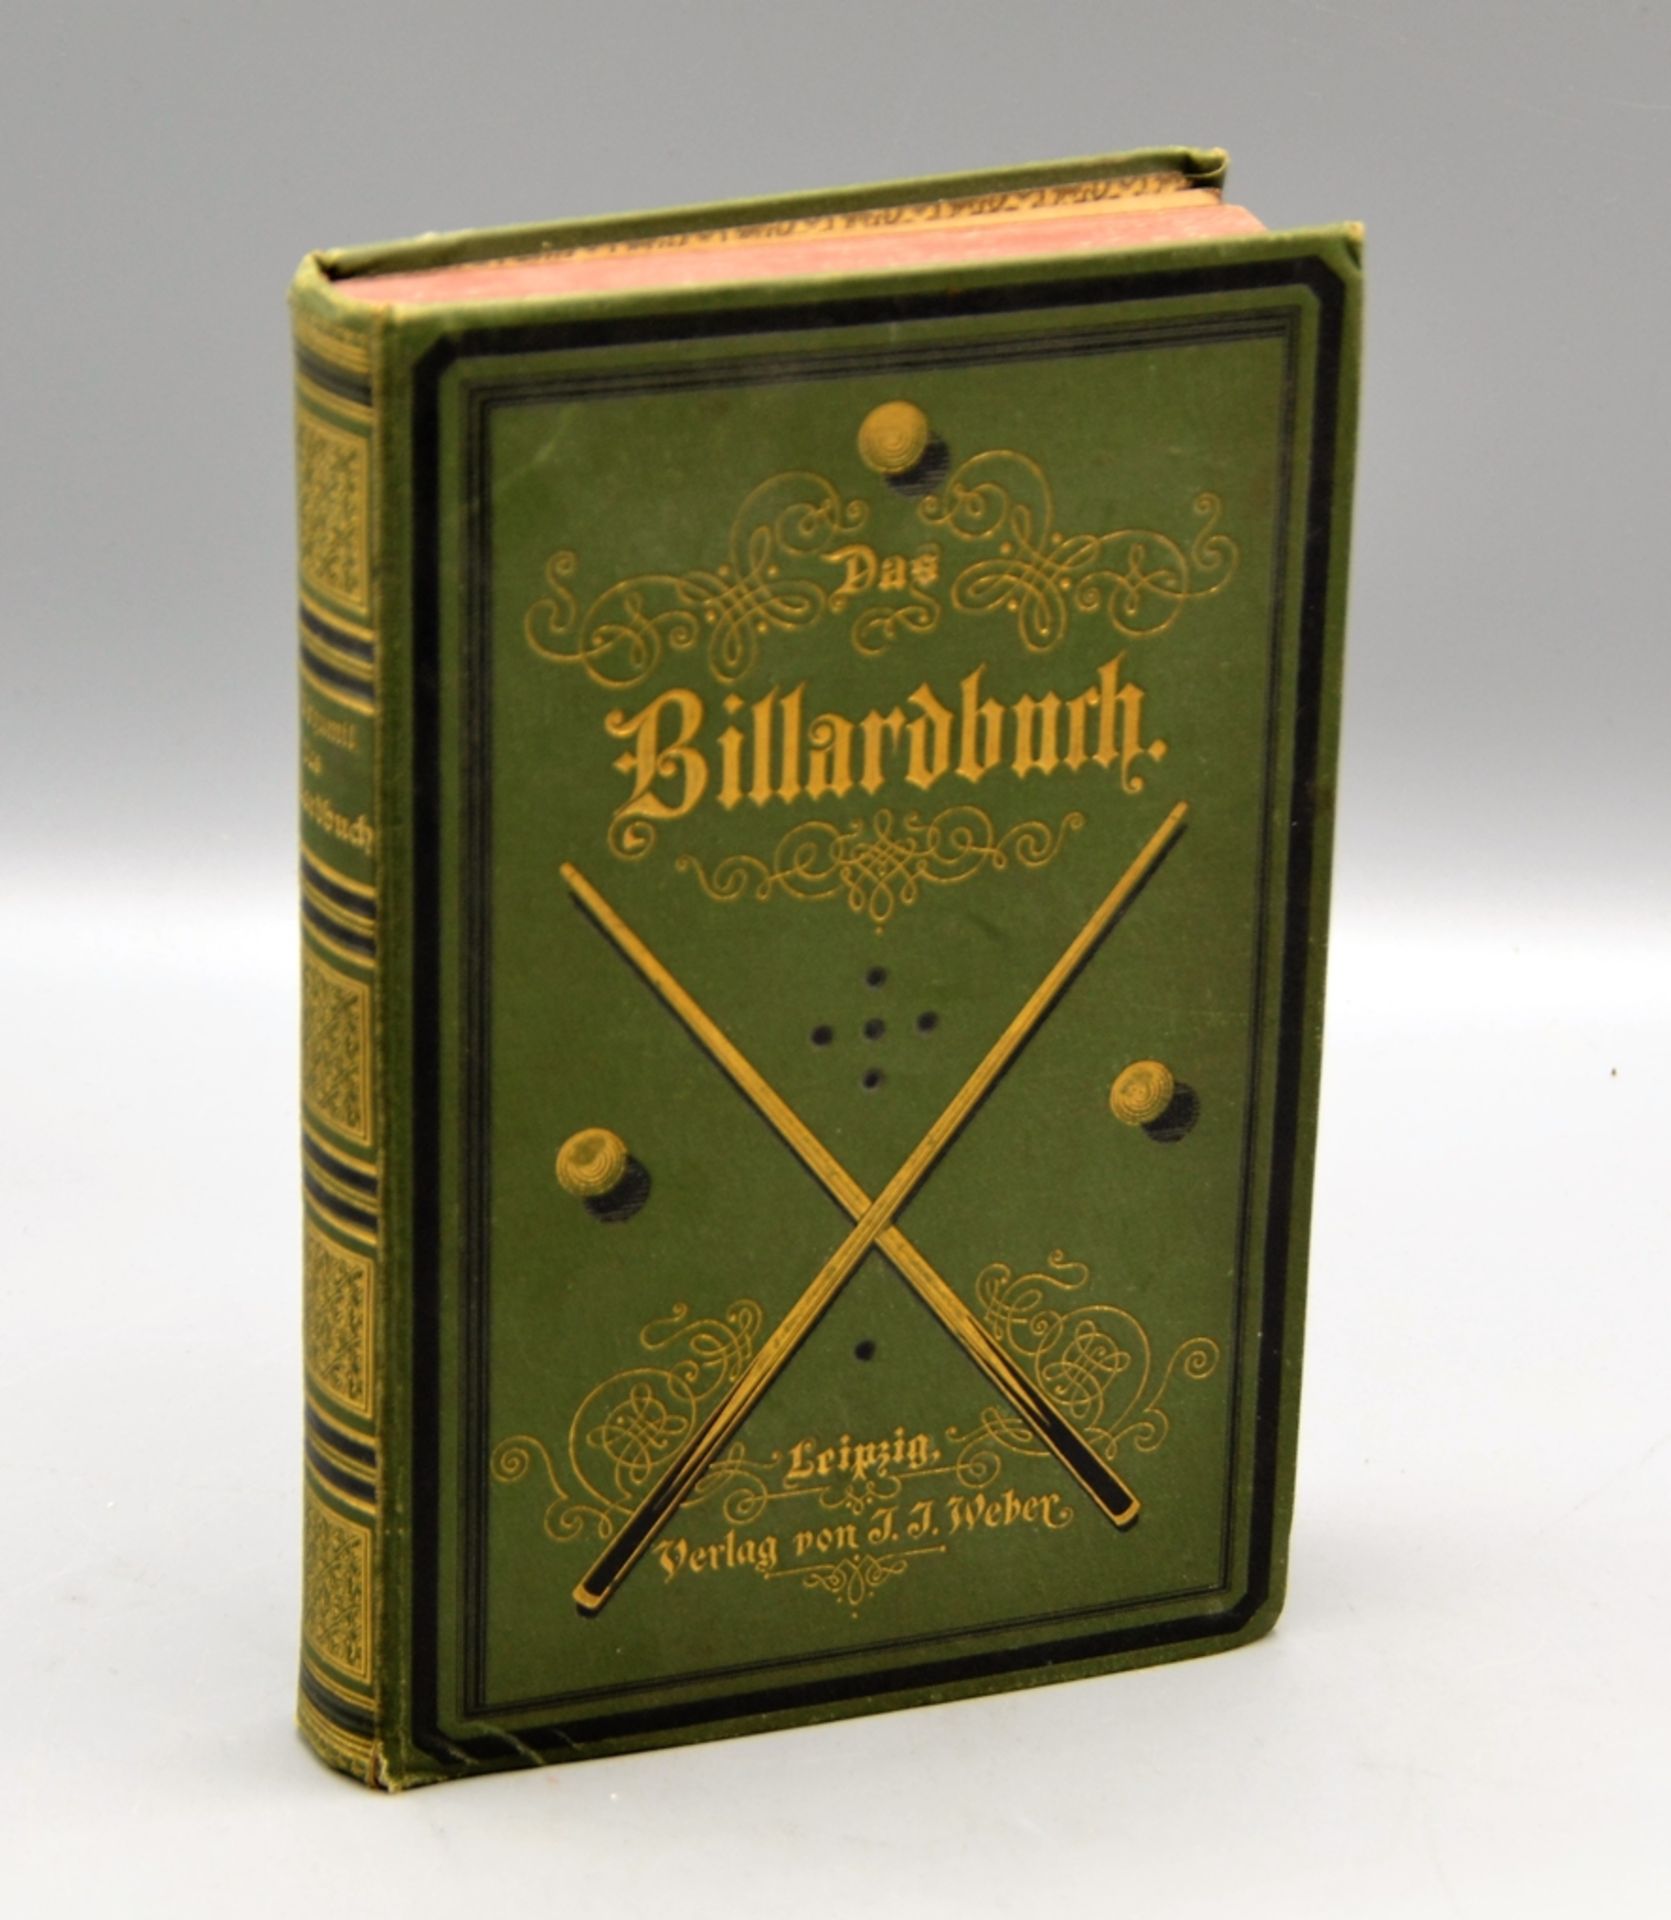 Das Billardbuch Cz. Bogumil Leipzig Verlag J. J. Weber 1876